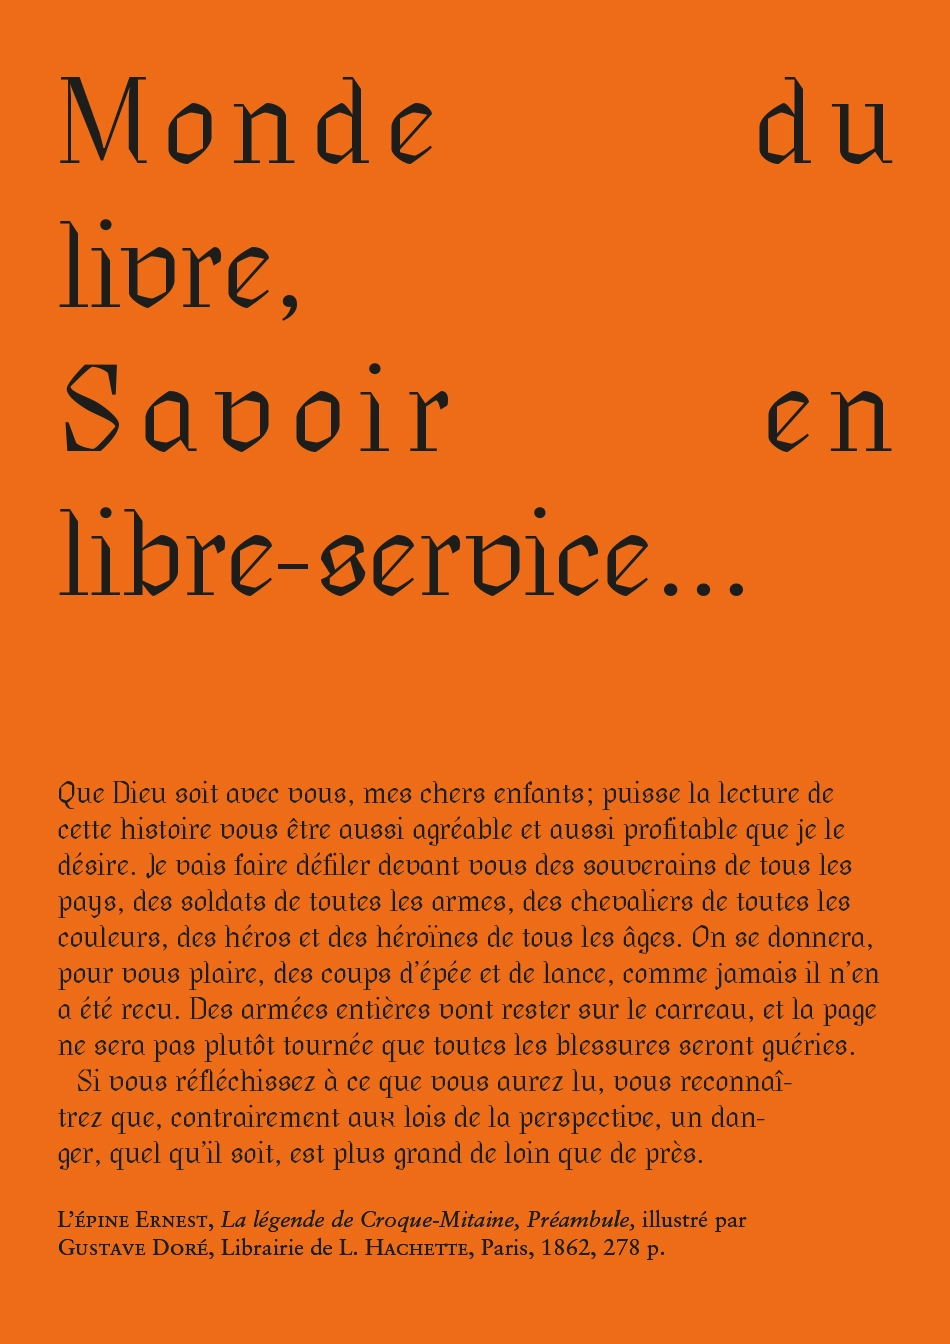 visuel orange avec texte noir avec tous les glyphes, réalisation typographique Thomas Hauck